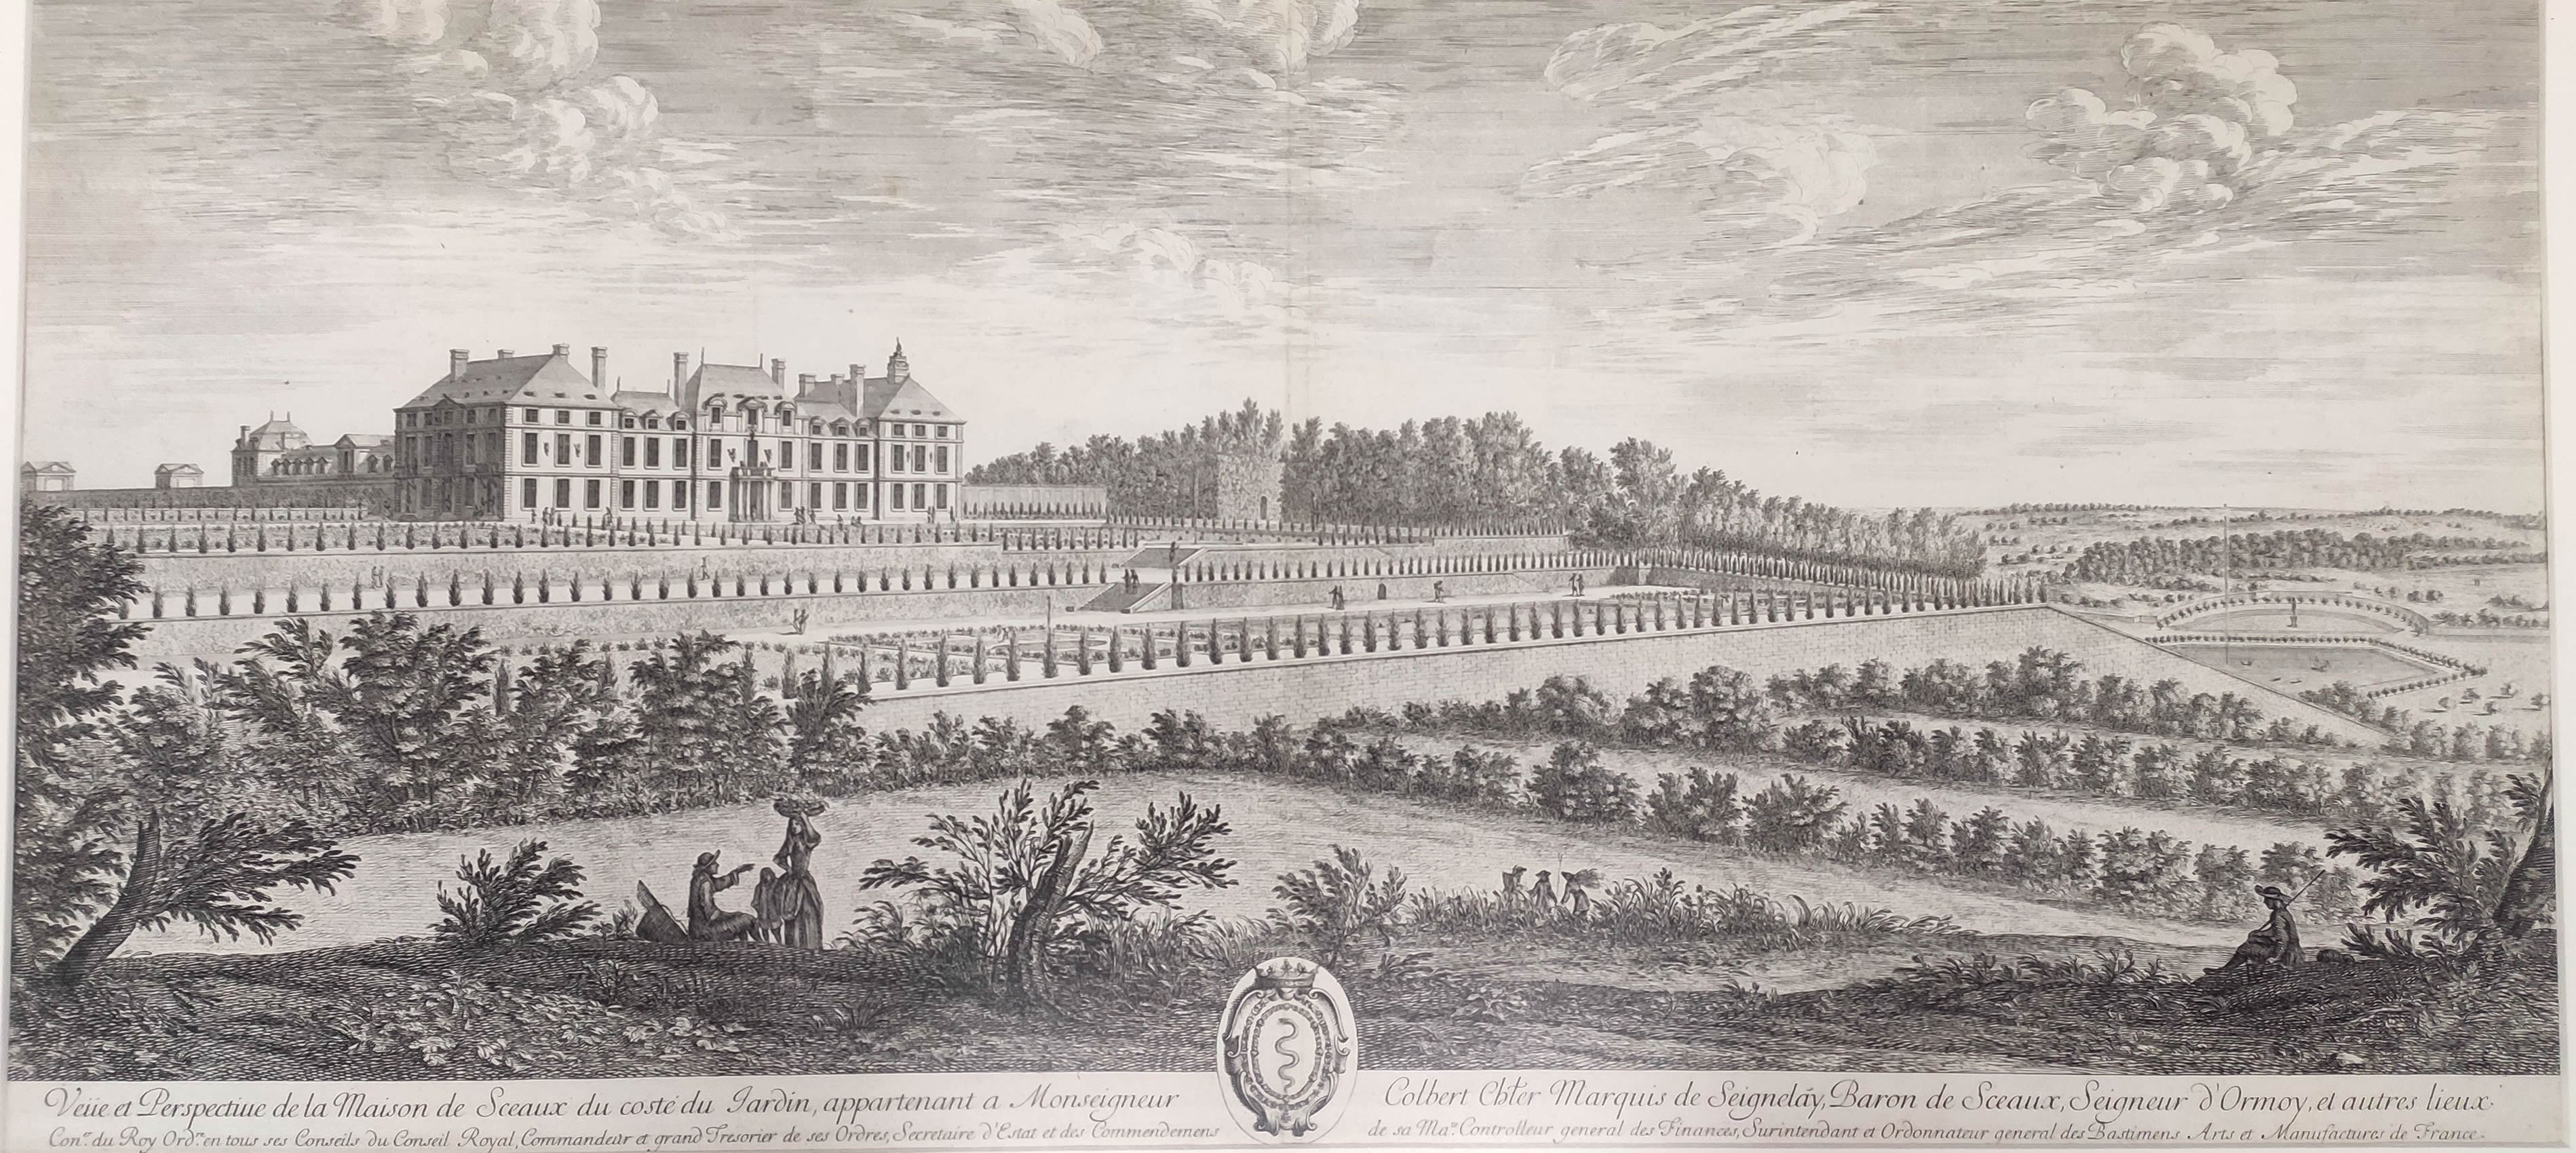 Israël Silvestre : Veüe et Perspectiue de la Maison de Sceaux du costé du Jardin, appartenant a Monseigneur Colbert.